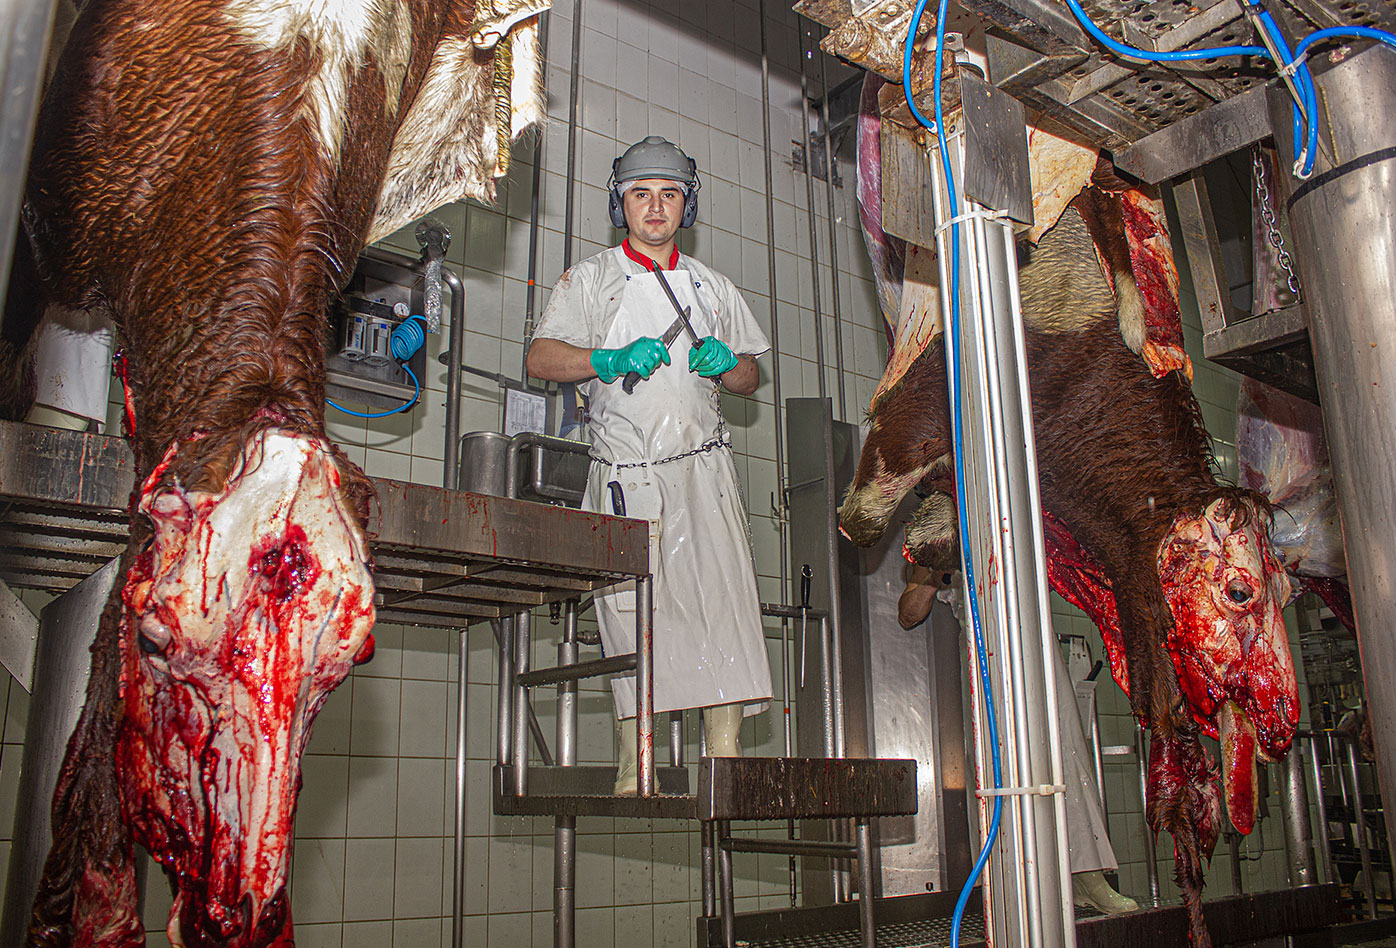 Un trabajador de matadero posa entre dos vacas muertas que están listas para ser desolladas・Gabriela Penela・We Animals Media